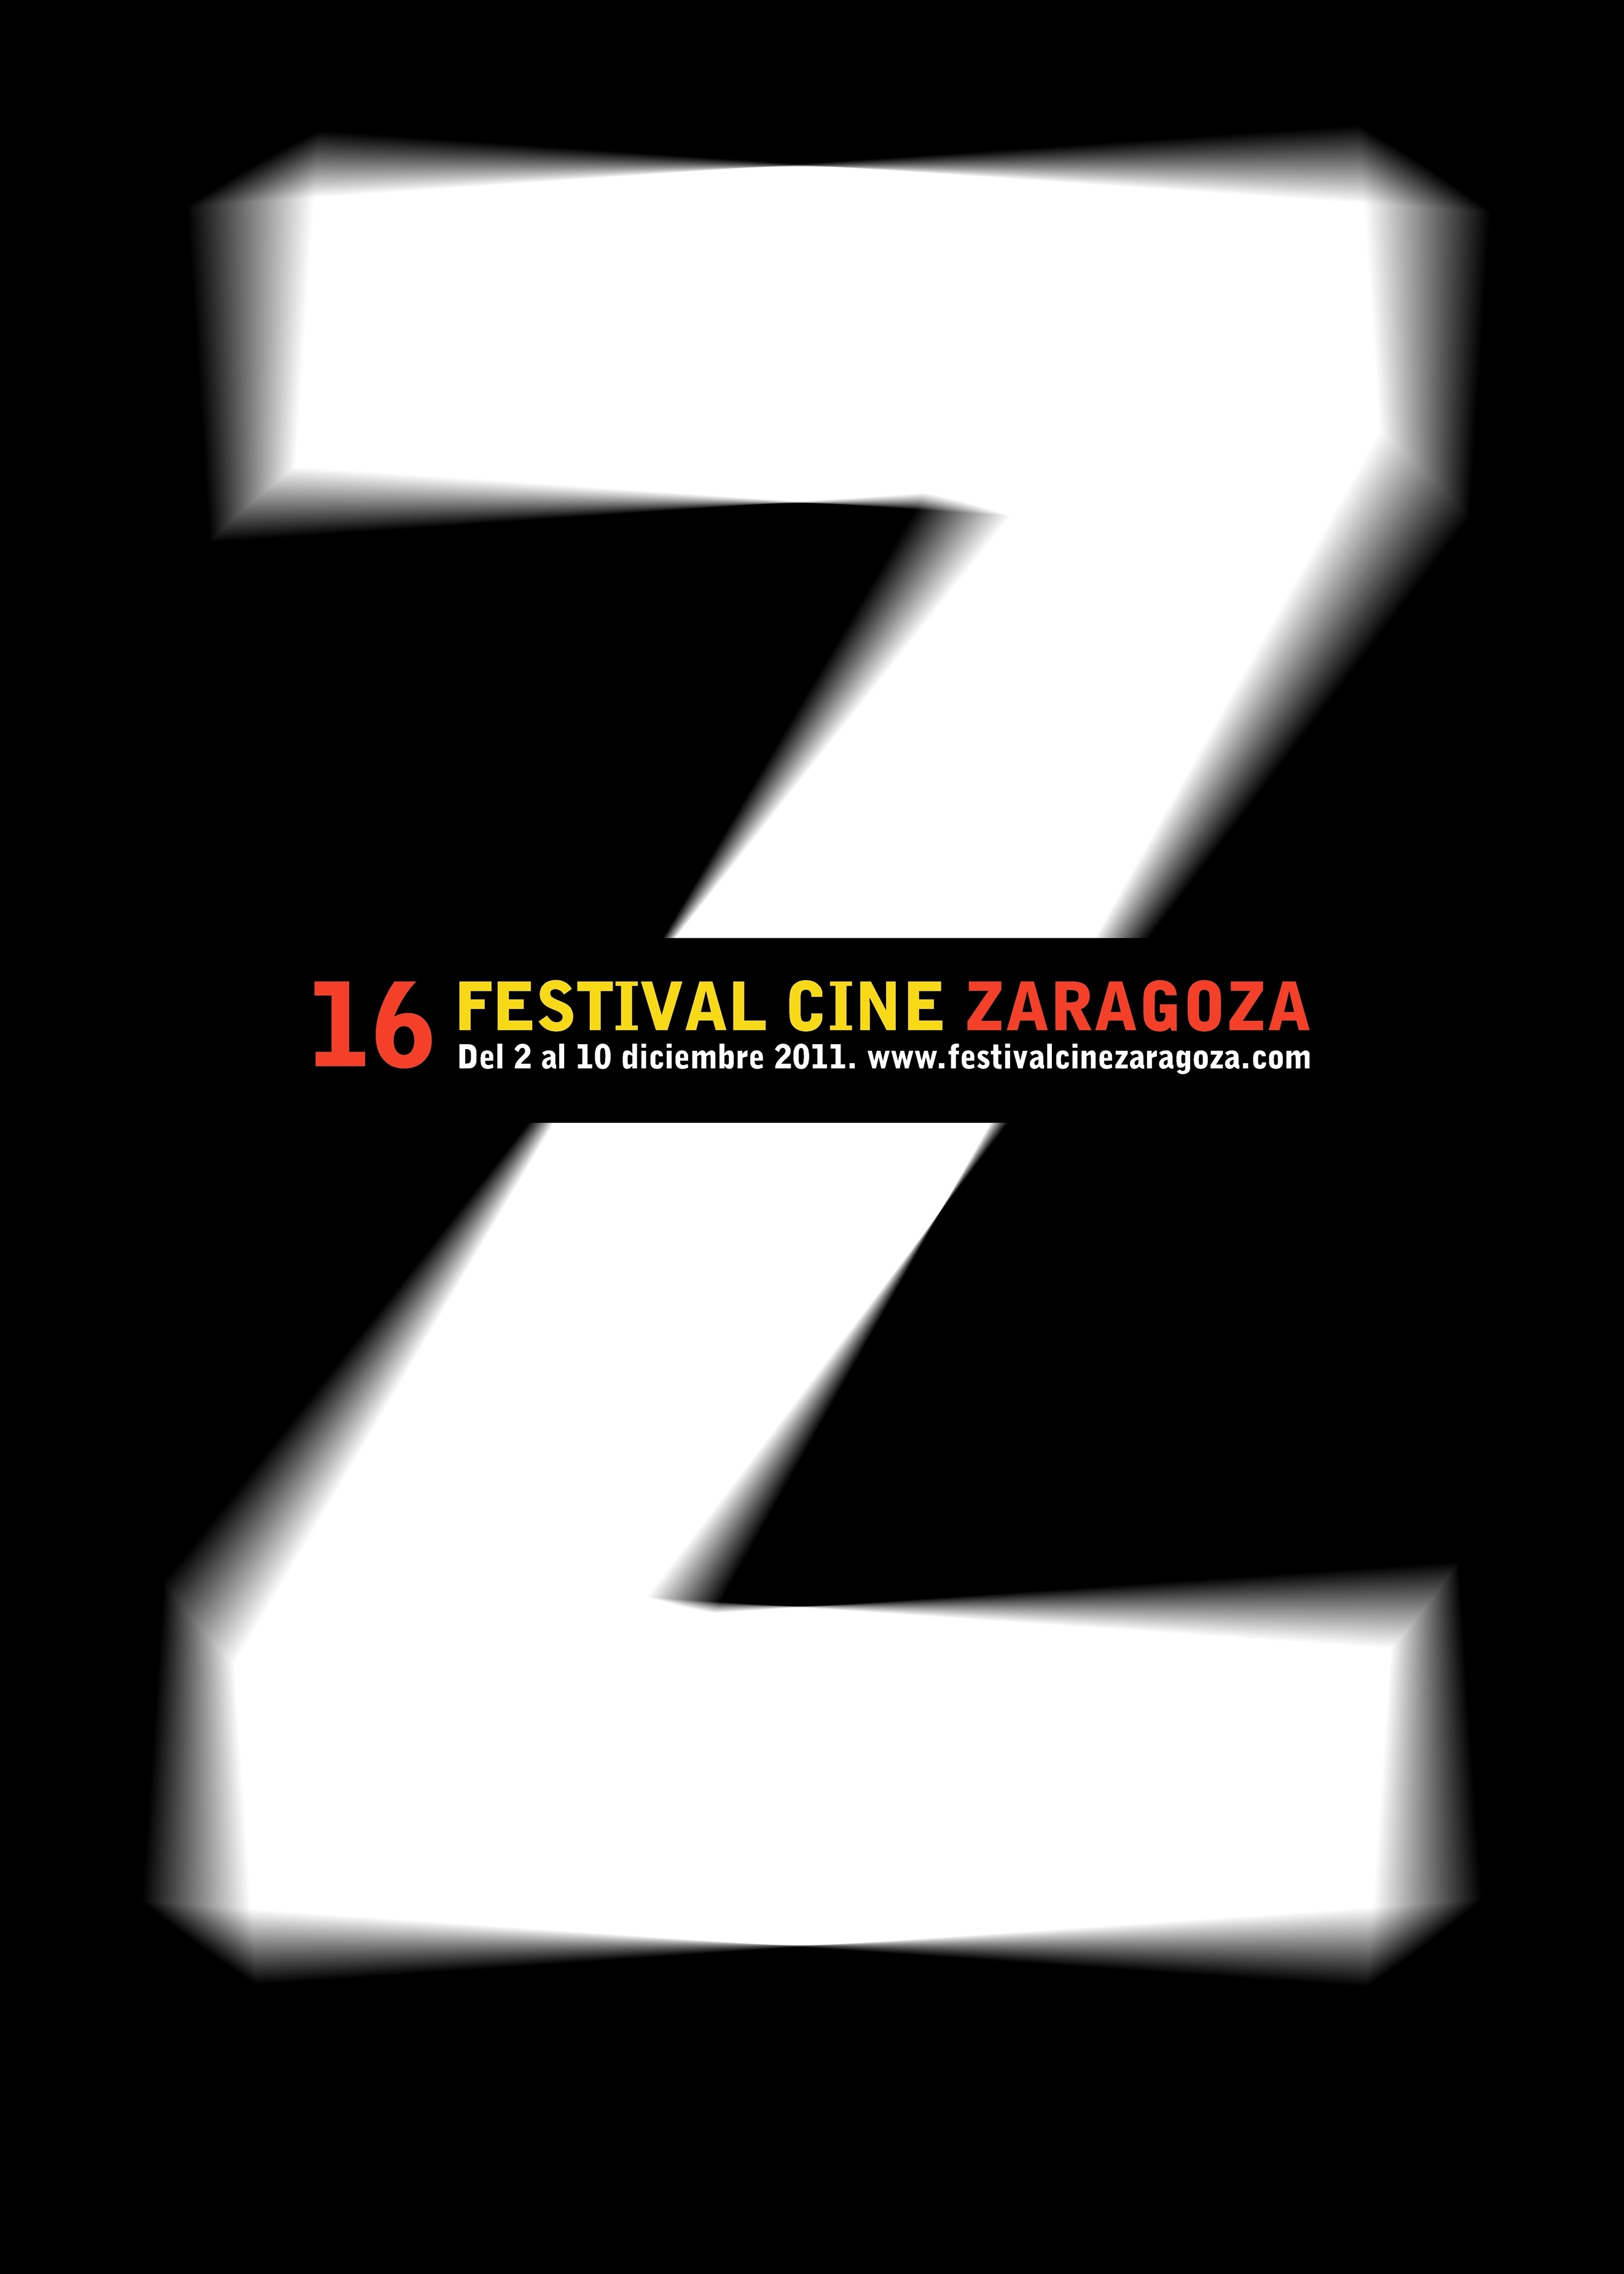 El FCZ organiza este martes una sesión de documentales y tres sesiones de cortos de ficción